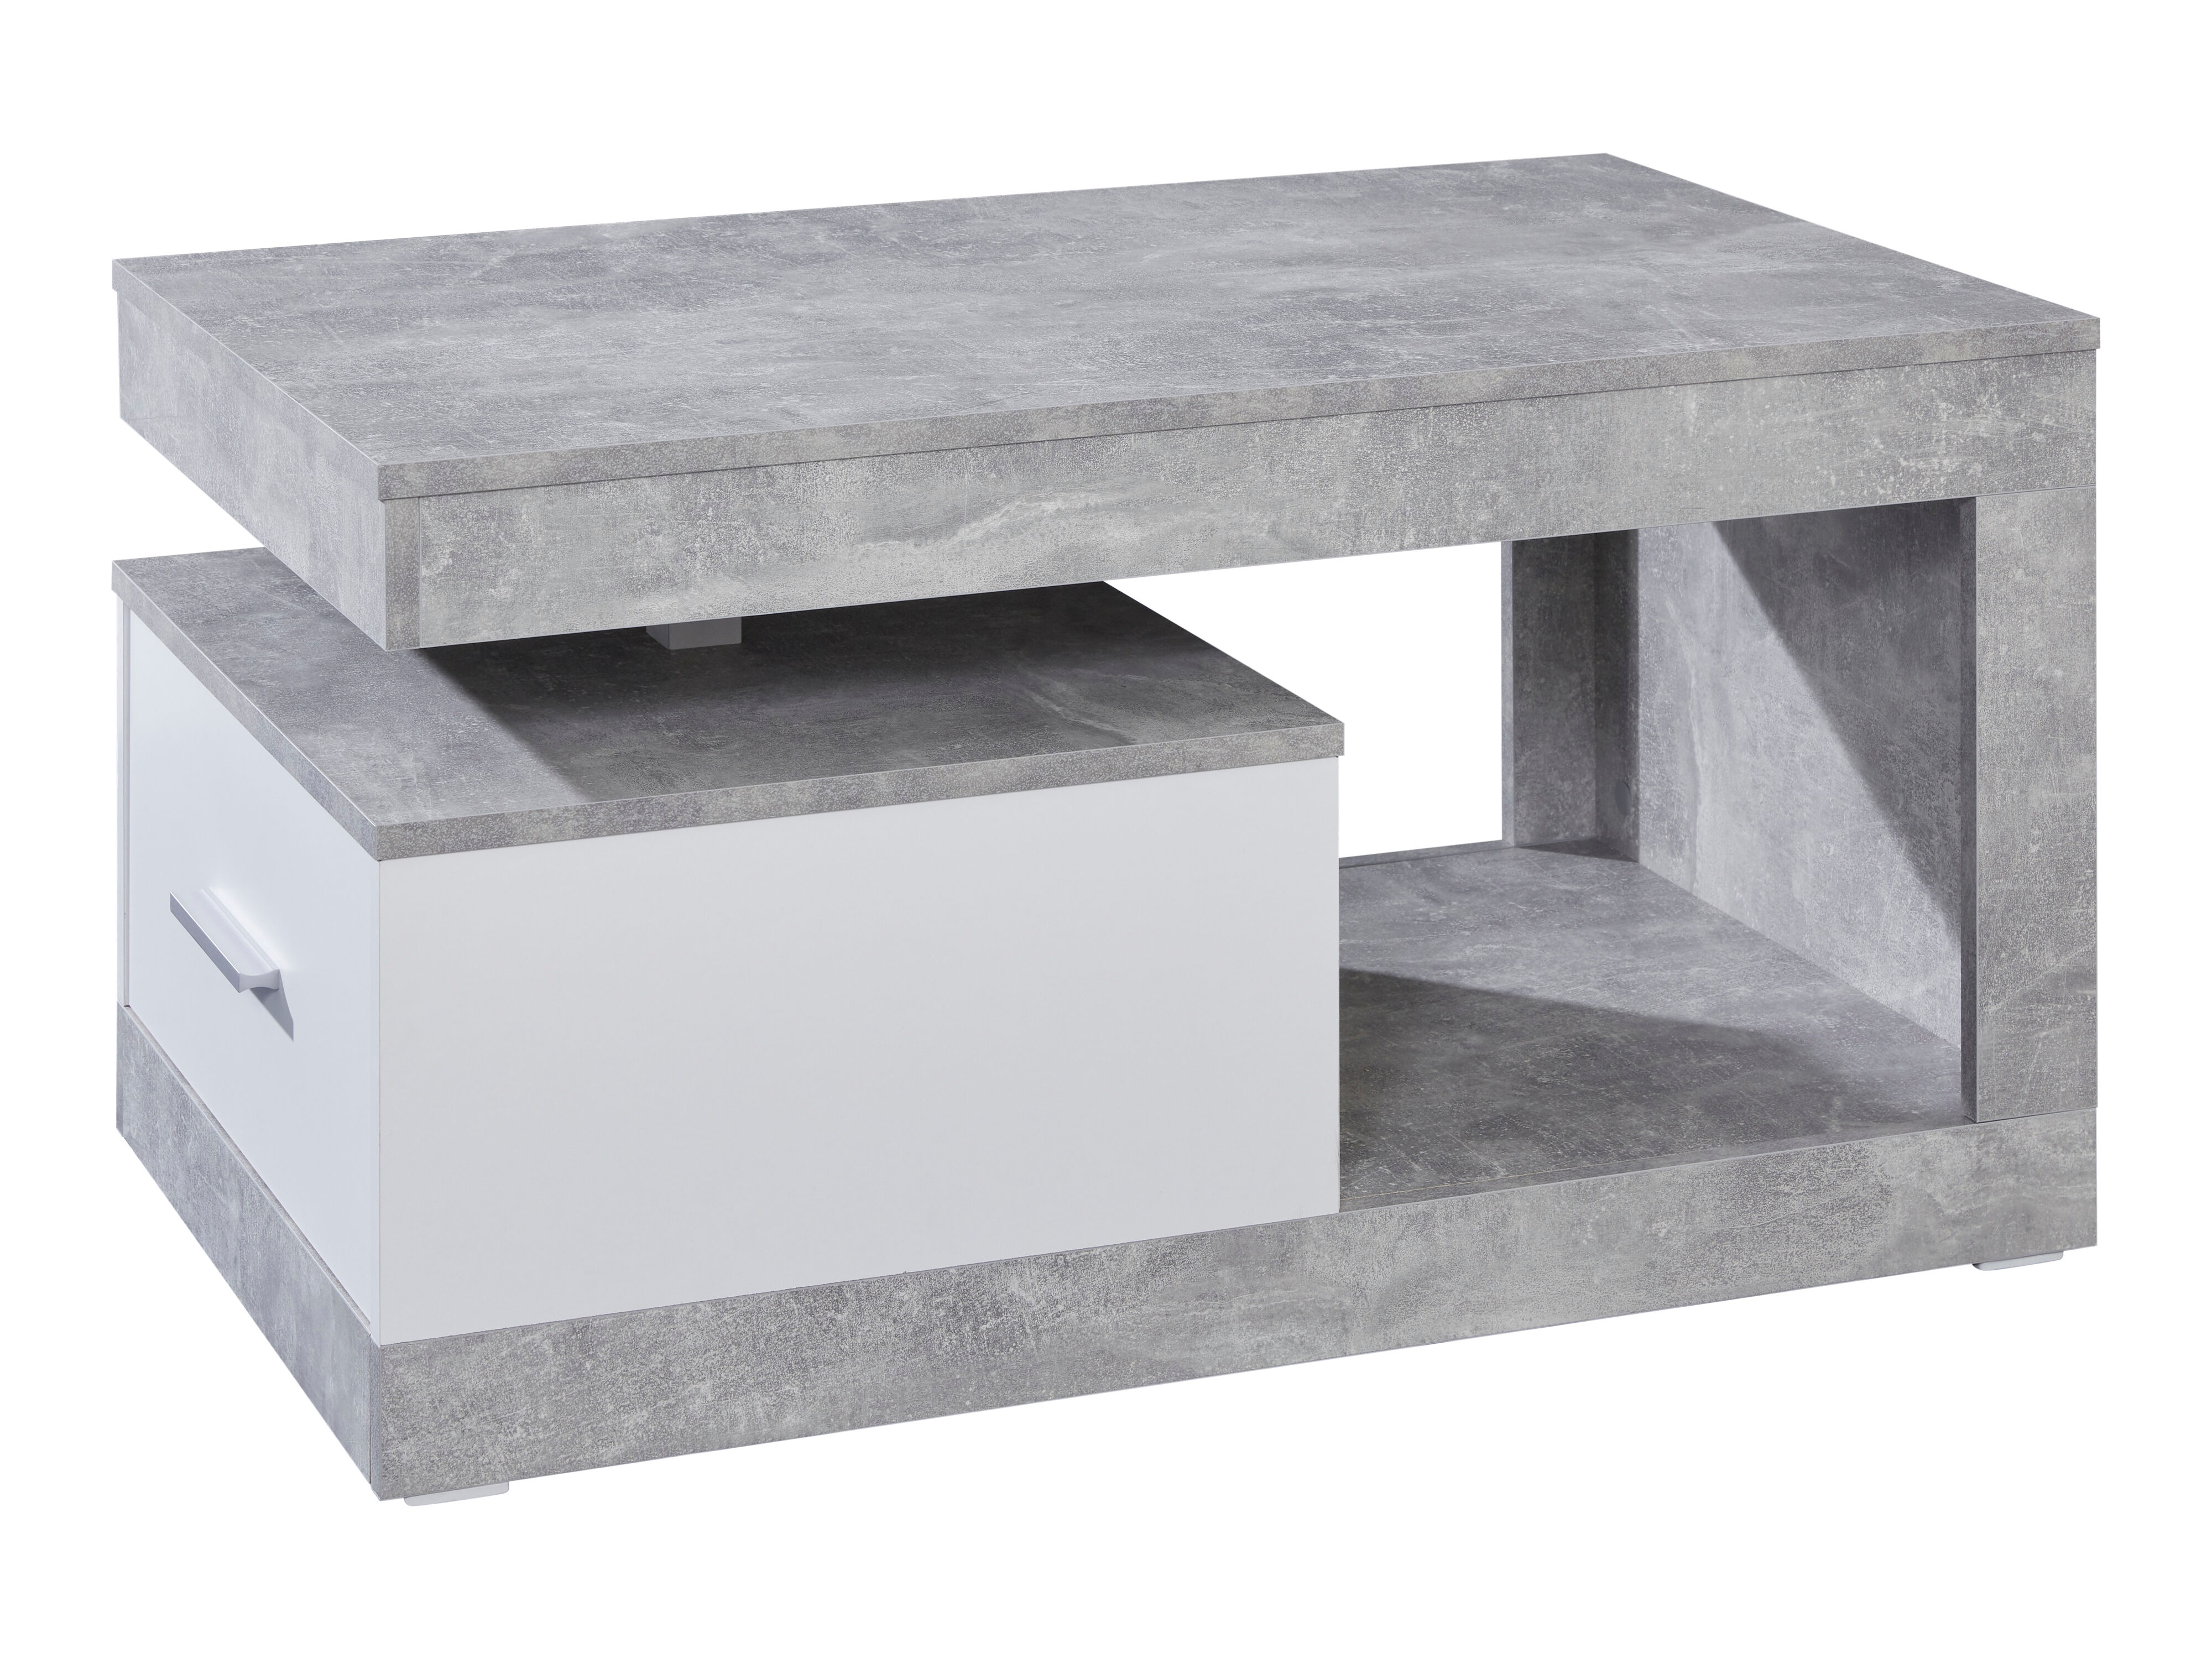 Hidalgo sofabord med 1 skuff og 1 hylle beton dekor, hvit.